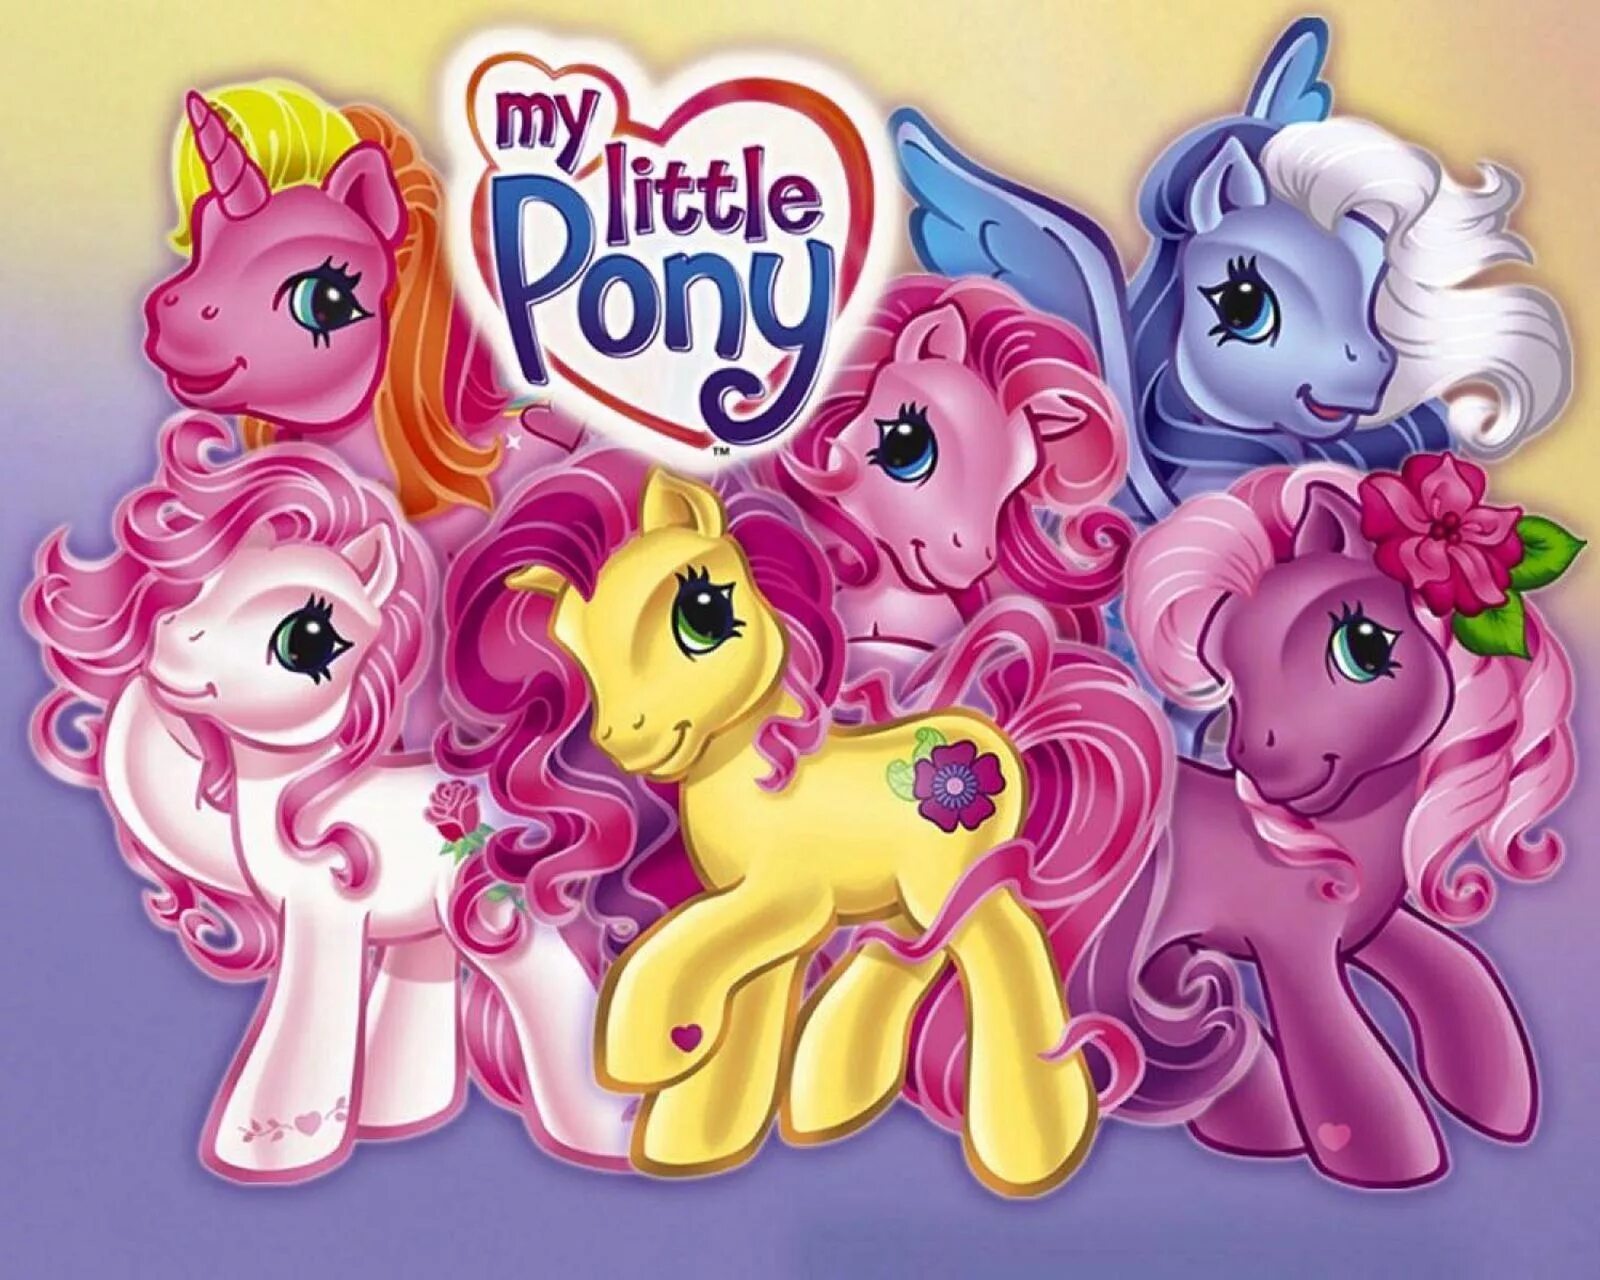 My little Pony g3. My little Pony Ponyville g3 игрушки. My little pony делать